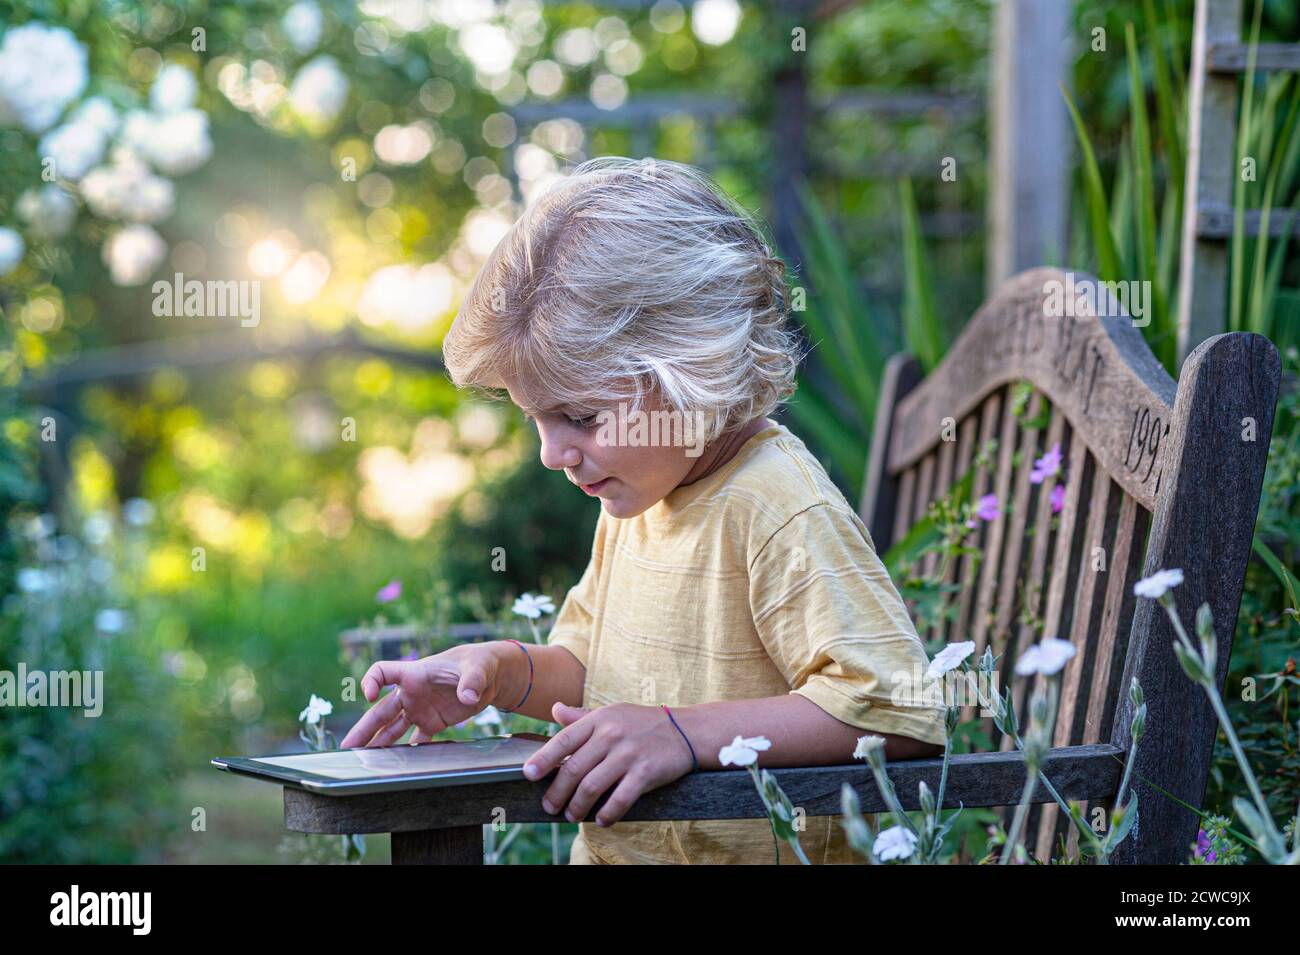 Kleinkind iPad Internet Sicherheit blonde junge 8-10 Jahre im floralen Garden glücklich mit seinem intelligenten Apple iPad Tablet-Computer im Freien In Blumengarten-Situation Stockfoto